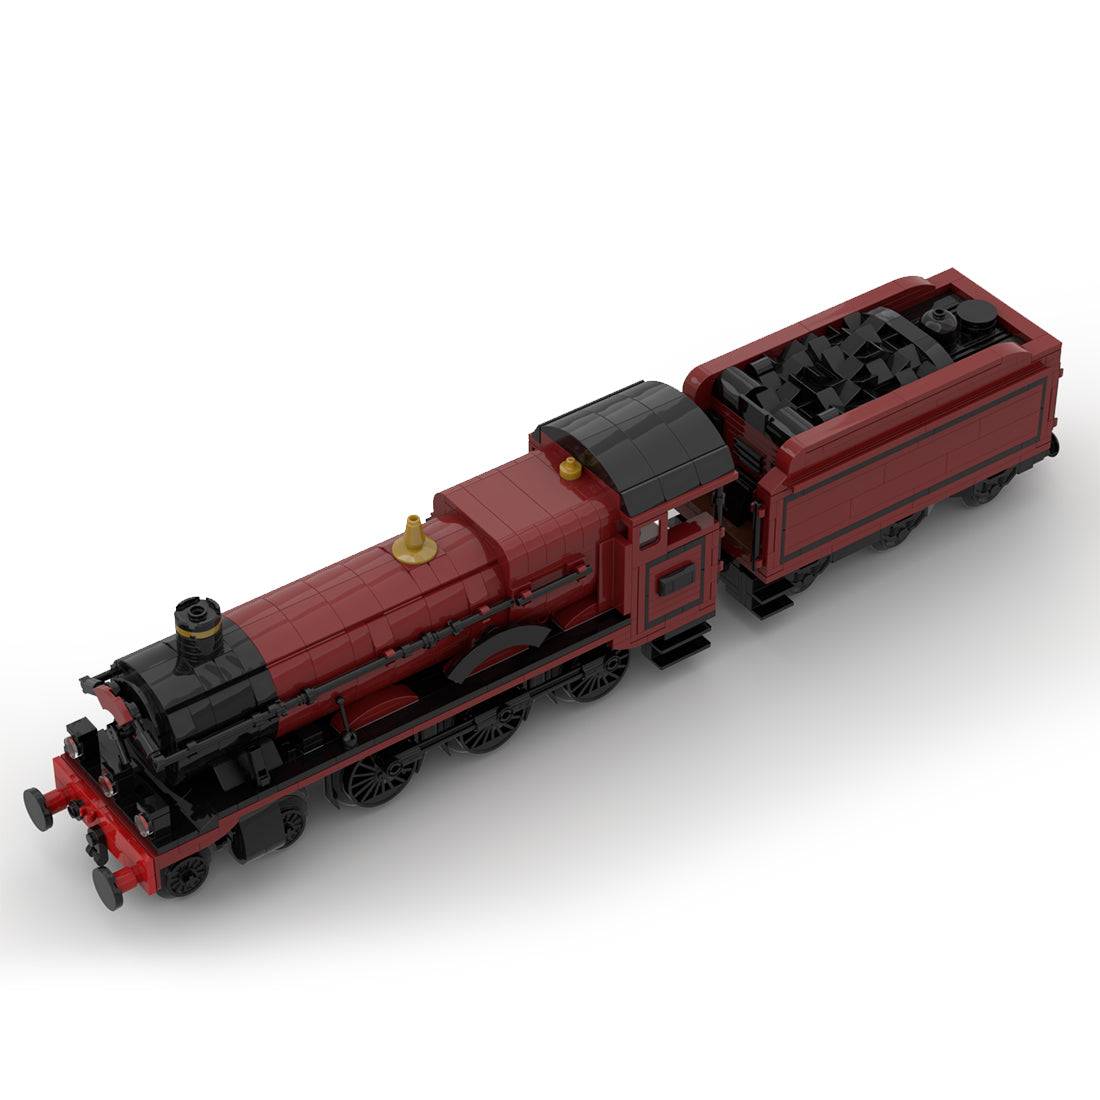 MOC-117702 GWR 8W Hall Class "Olton-Hall" Steam Locomotive